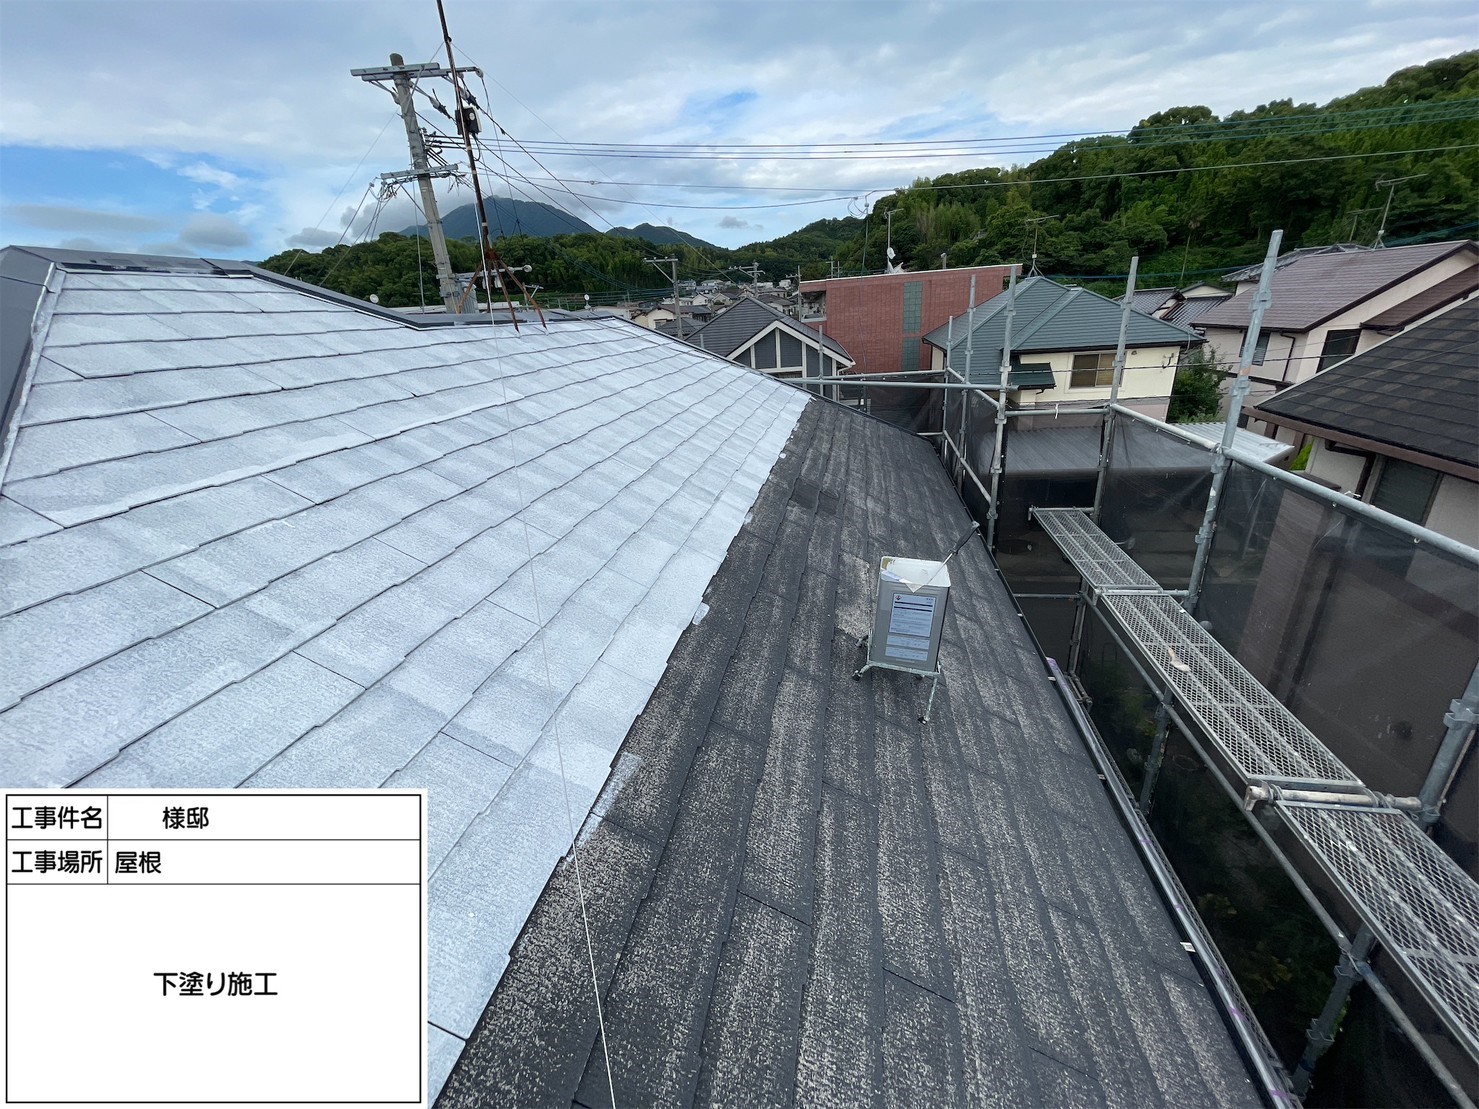 福岡県太宰府市石坂のM様邸をハウジングコート一押しの塗料を使用して外壁屋根を新築の様に塗装していきます。6/17着工です。【ご来店より】